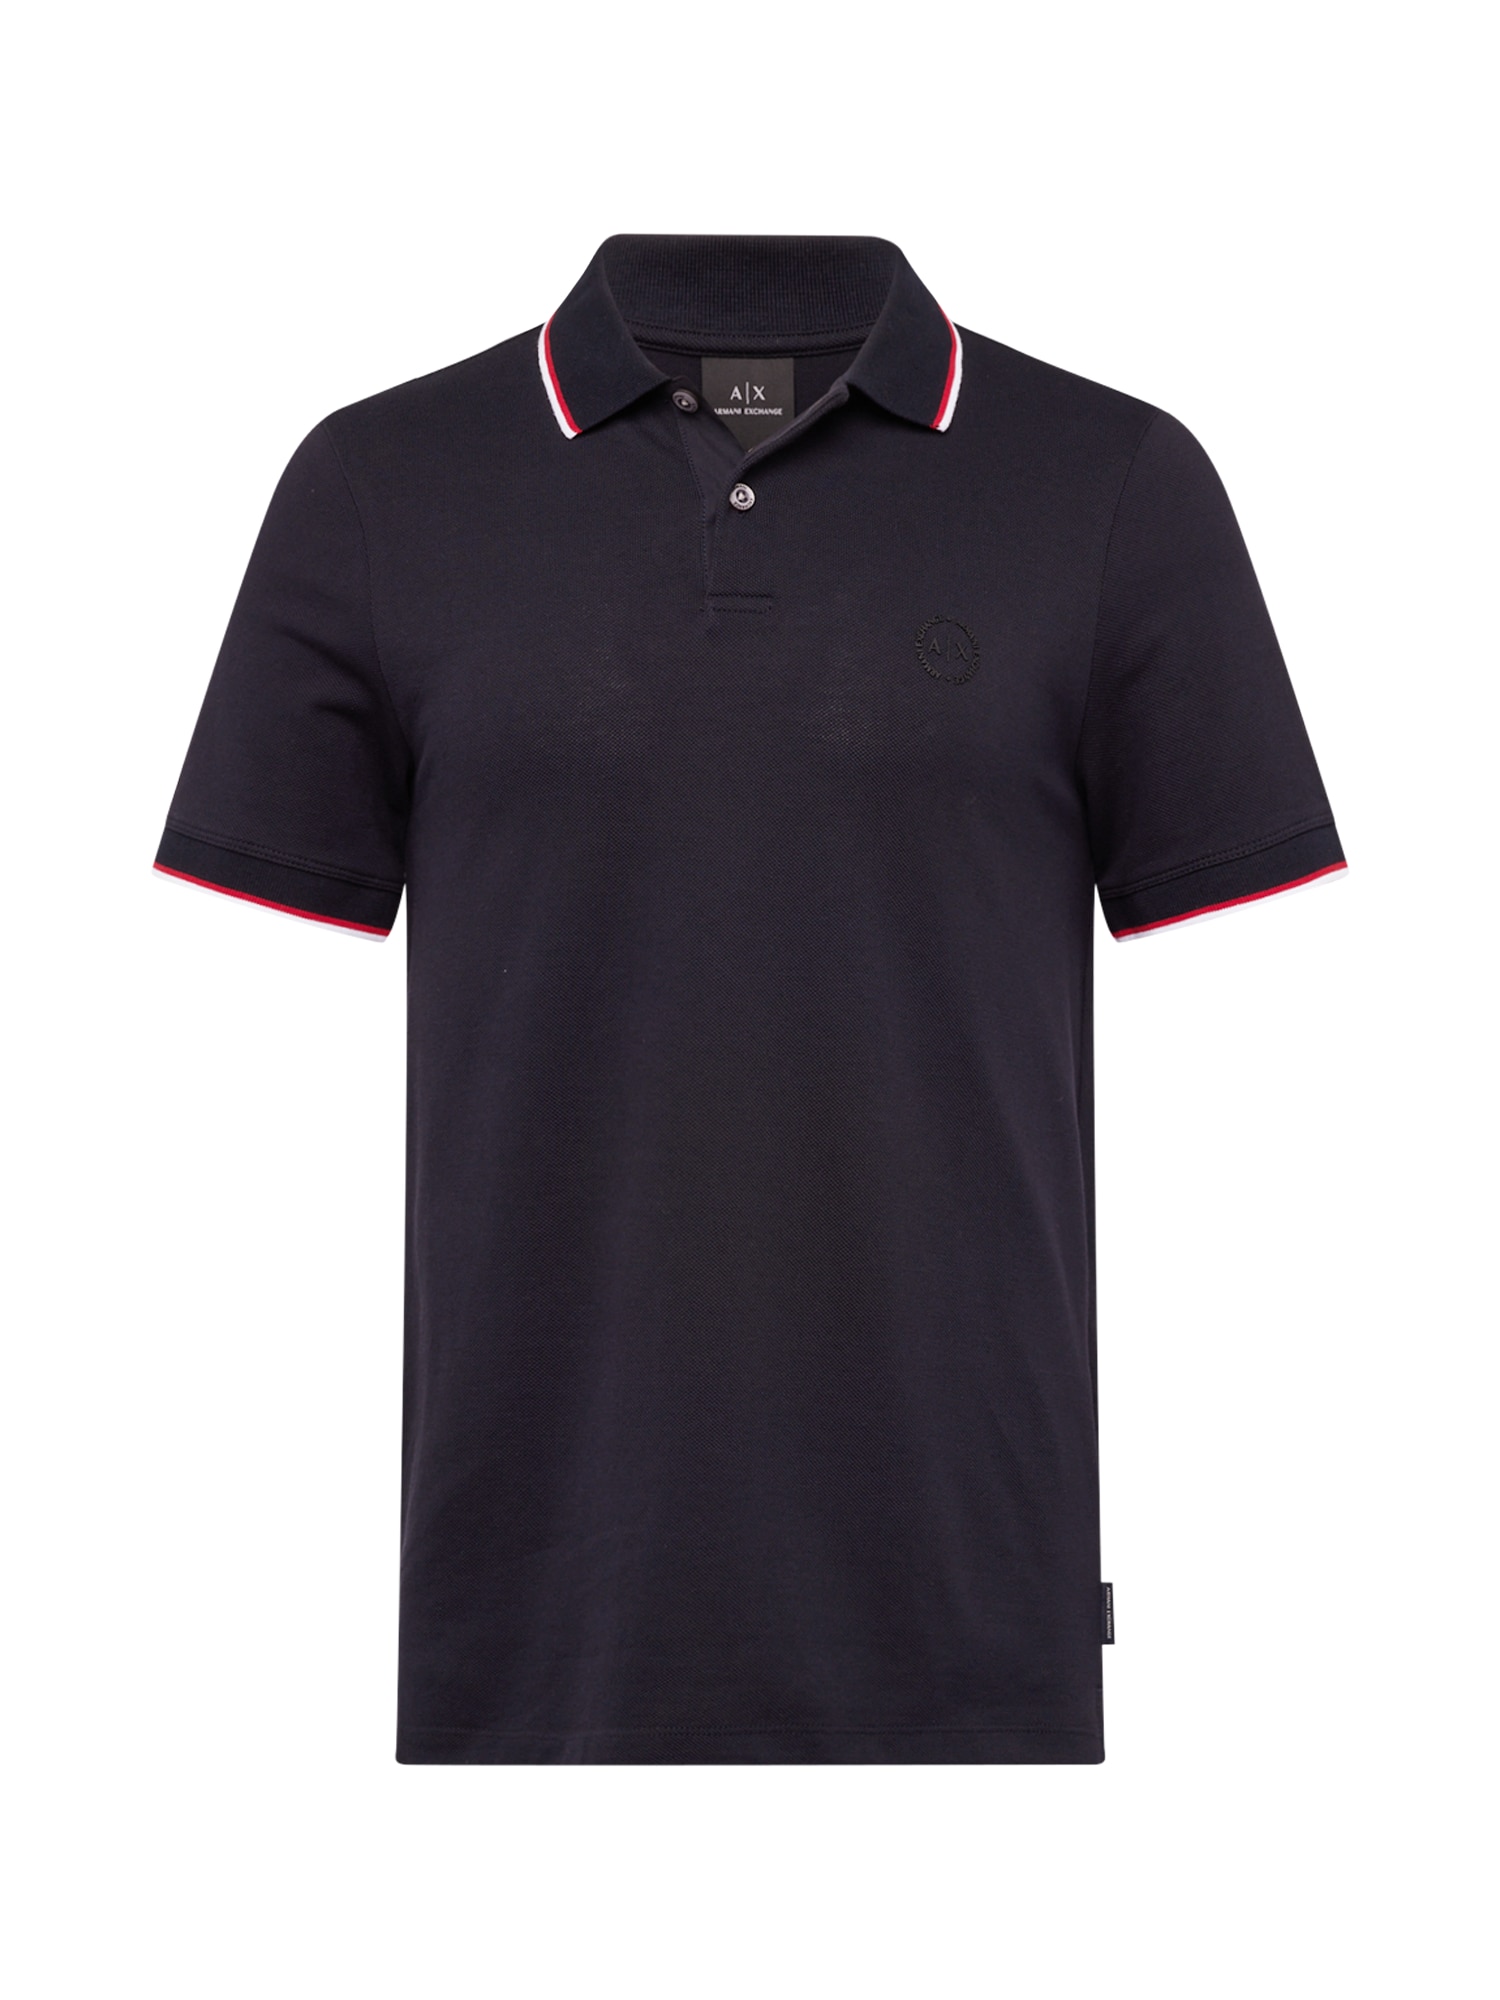 ARMANI EXCHANGE Marškinėliai tamsiai mėlyna / raudona / balta